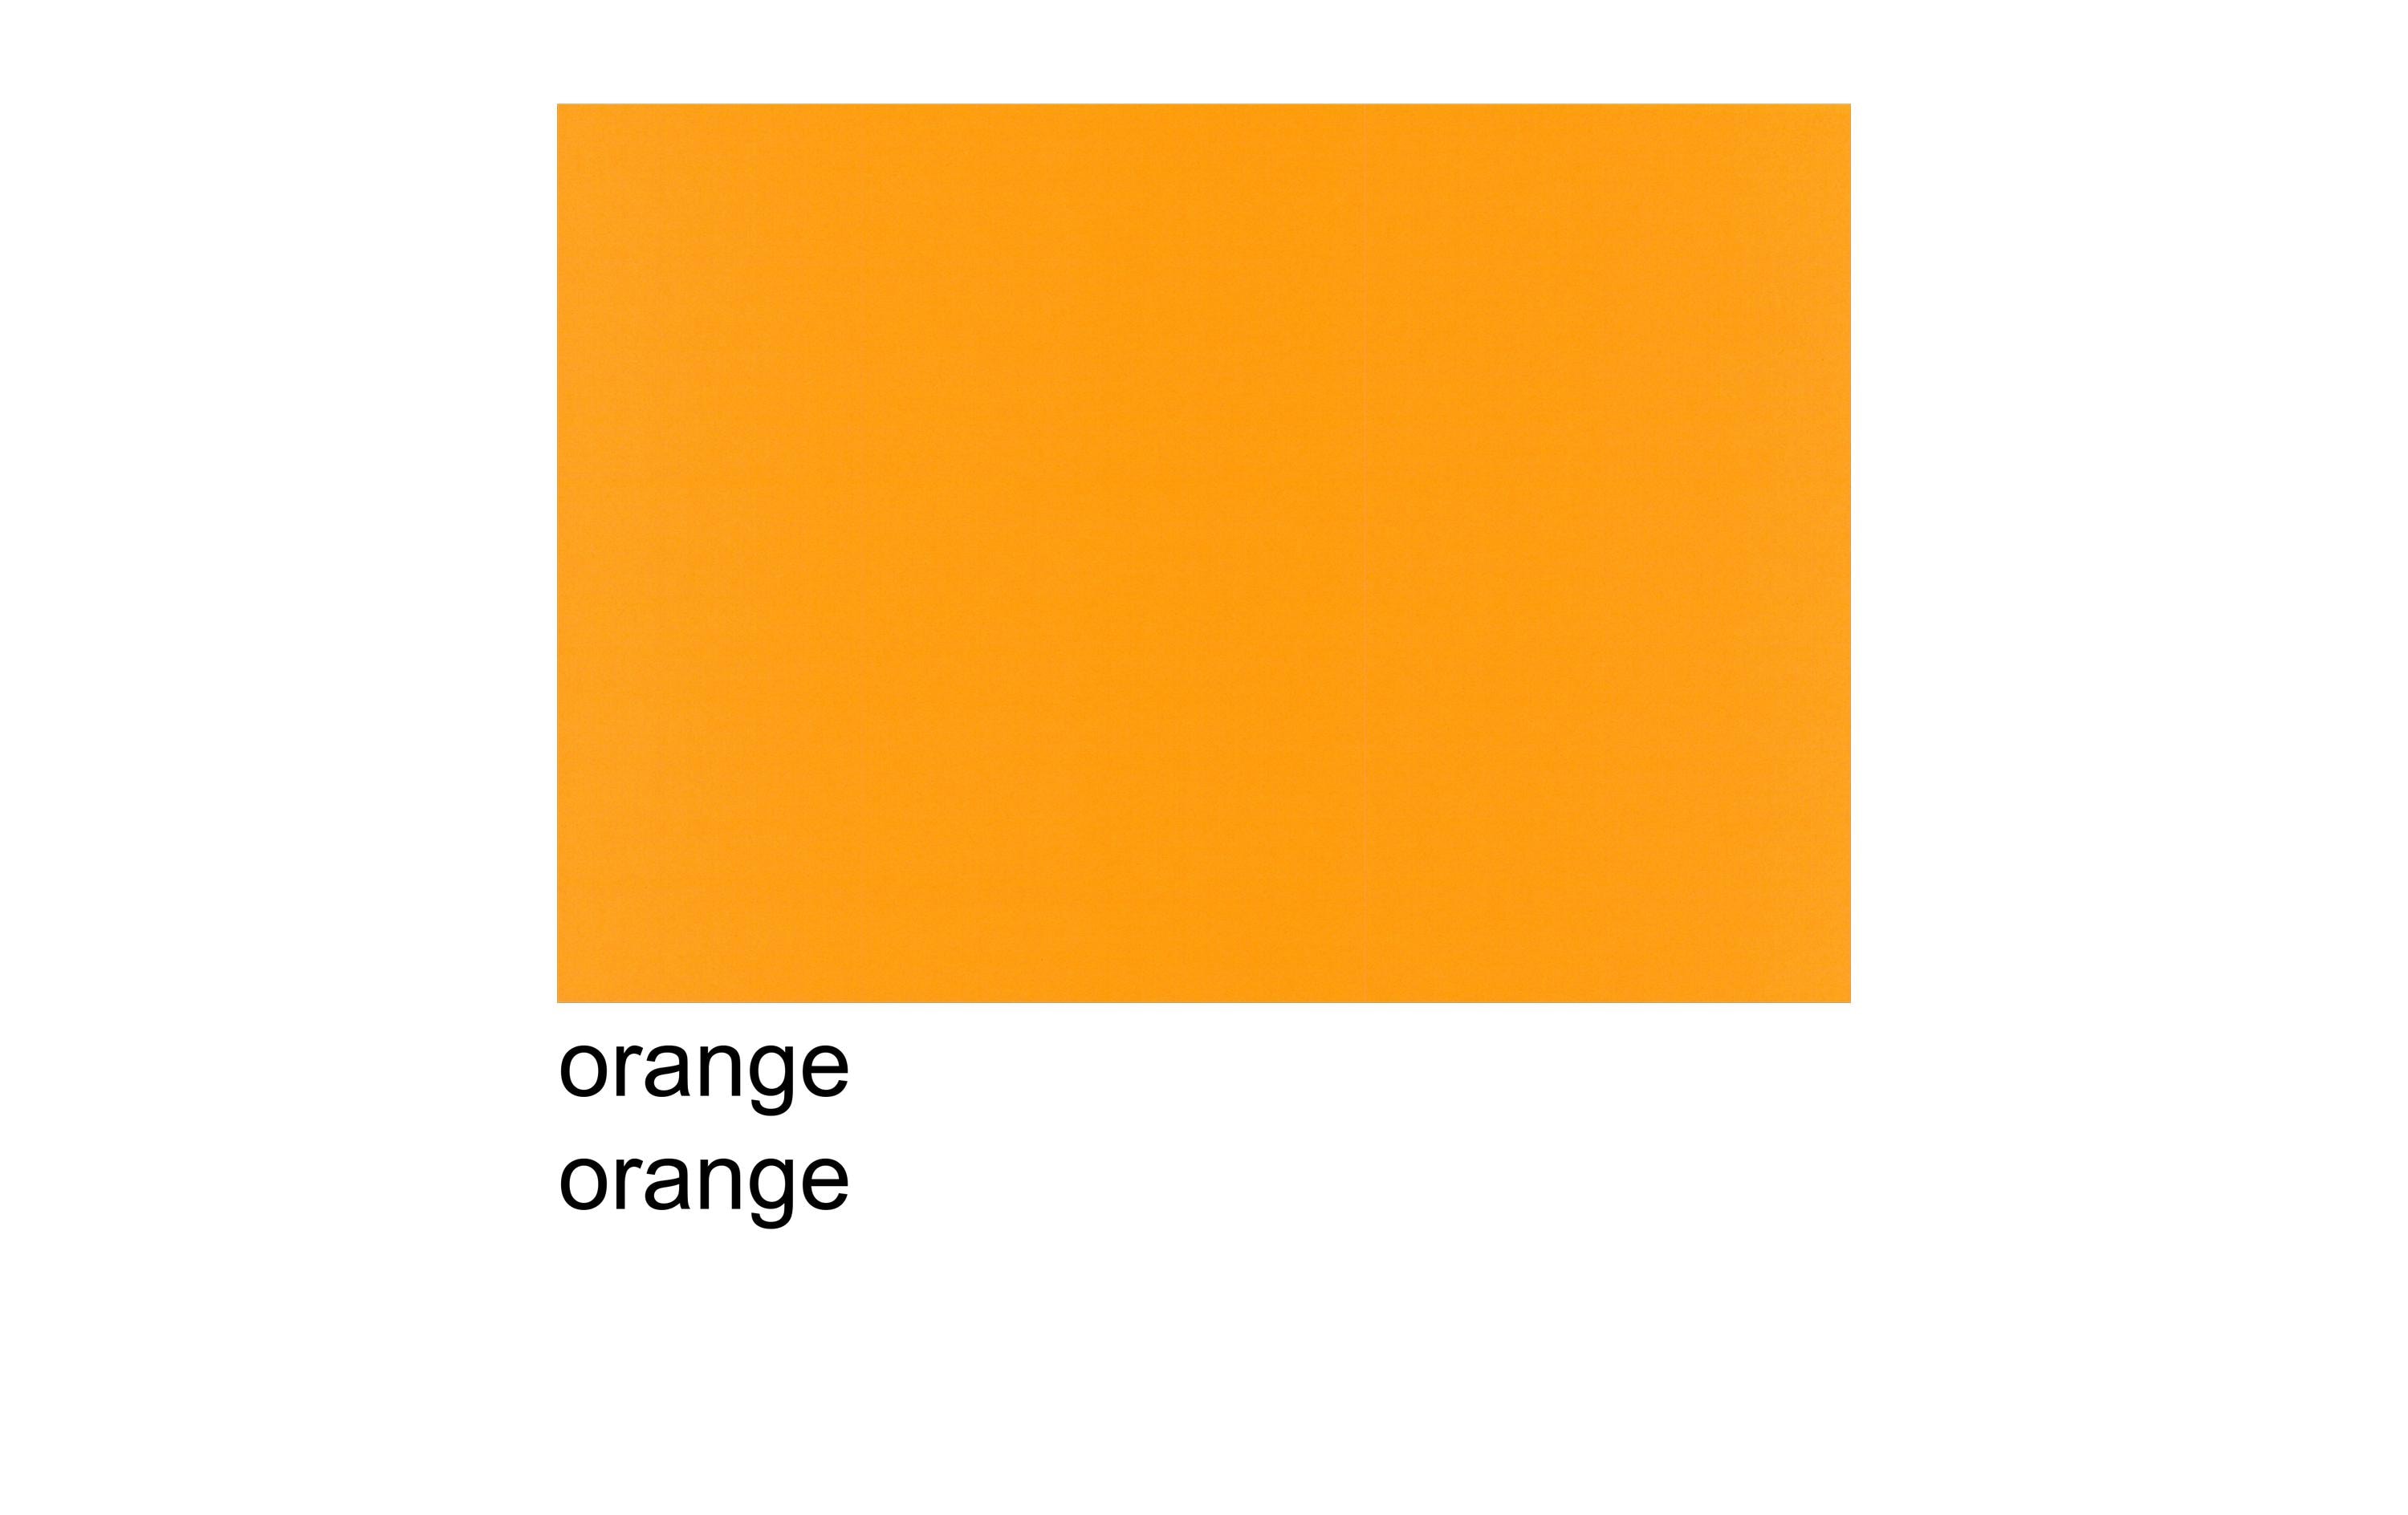 Scaldia Tonzeichenpapier A3, 130 g/m², 100 Stück, Orange